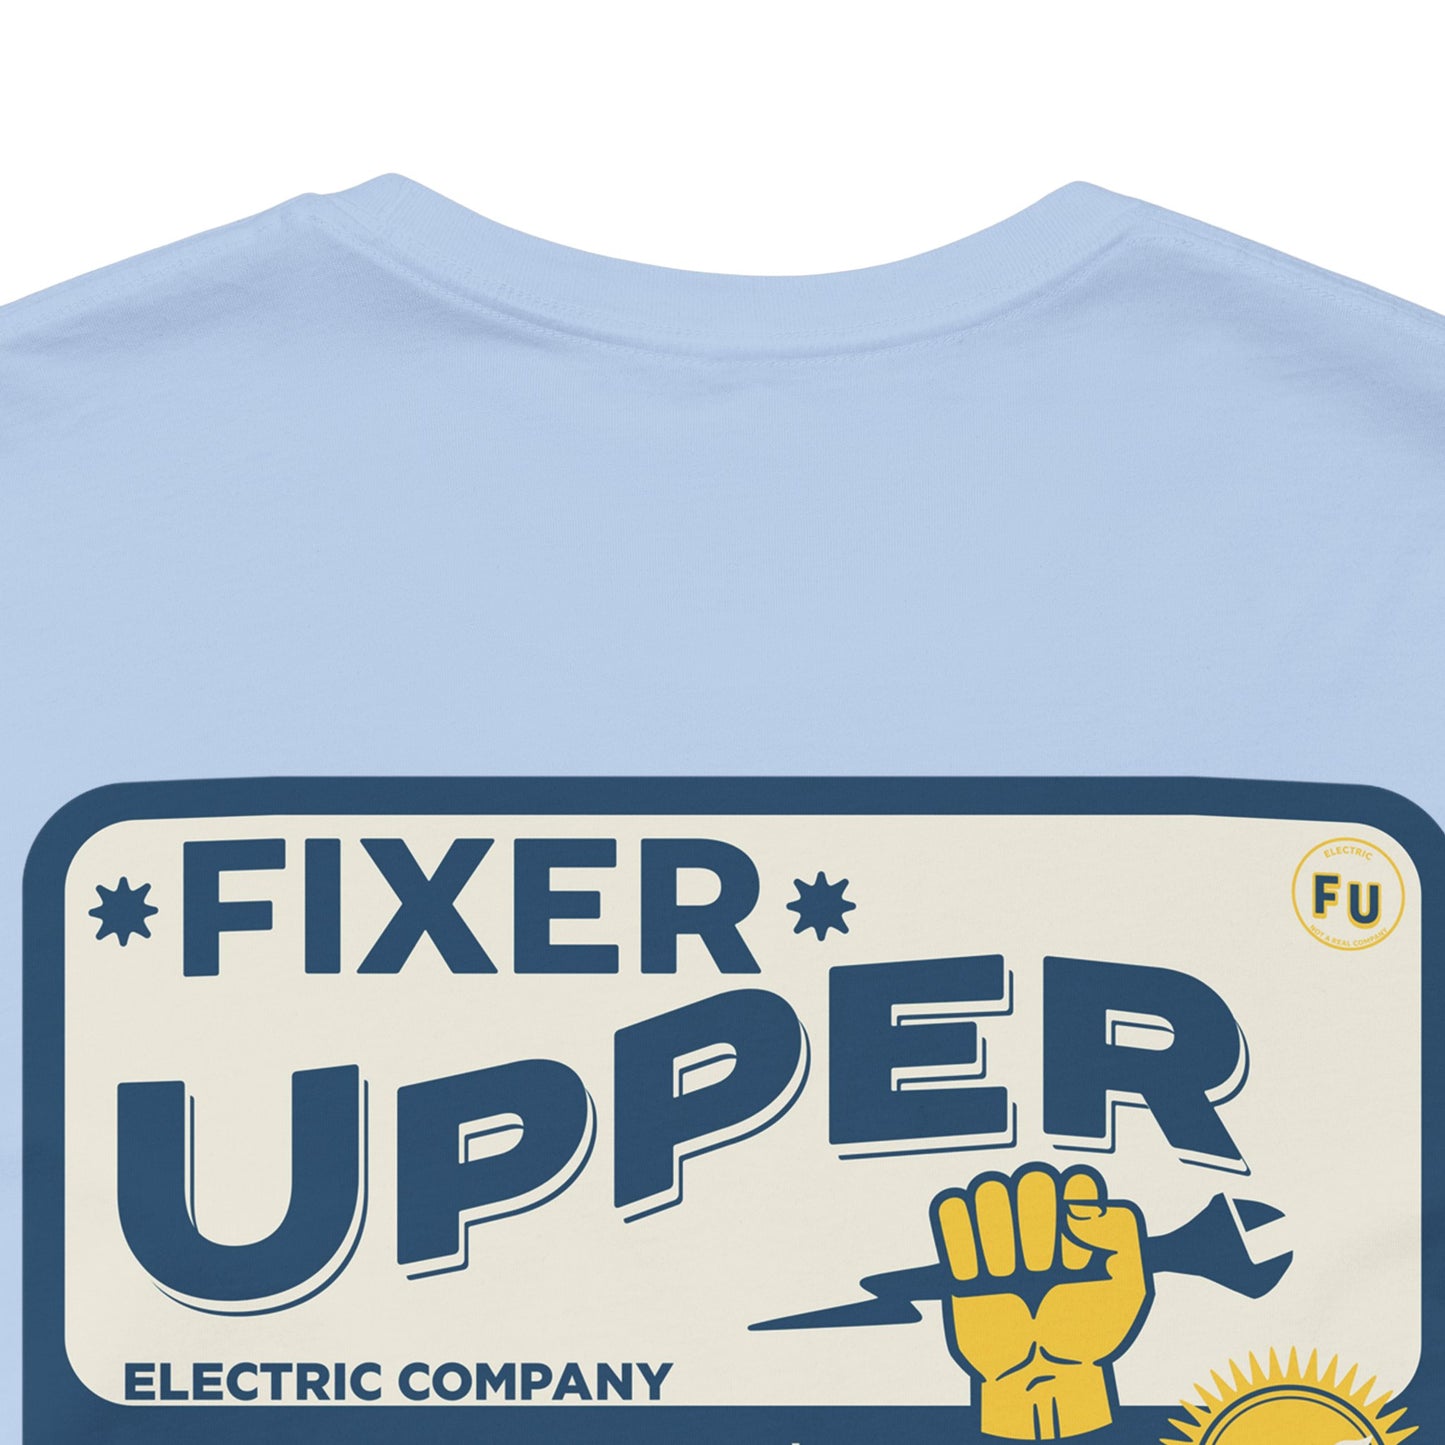 Fixer Upper - T-Shirt